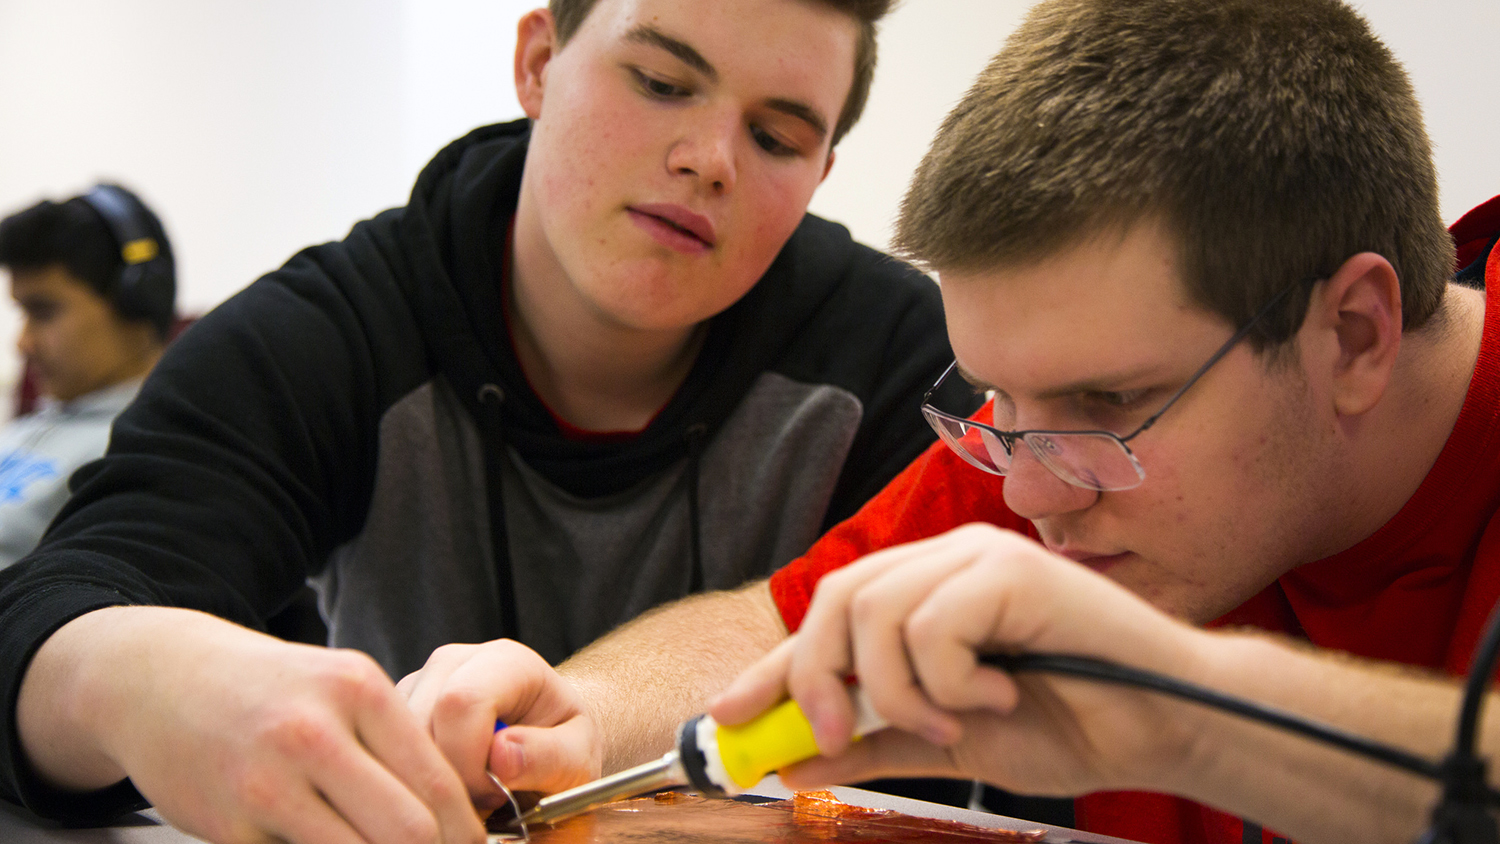 两个催化剂项目的学生在焊接电路。